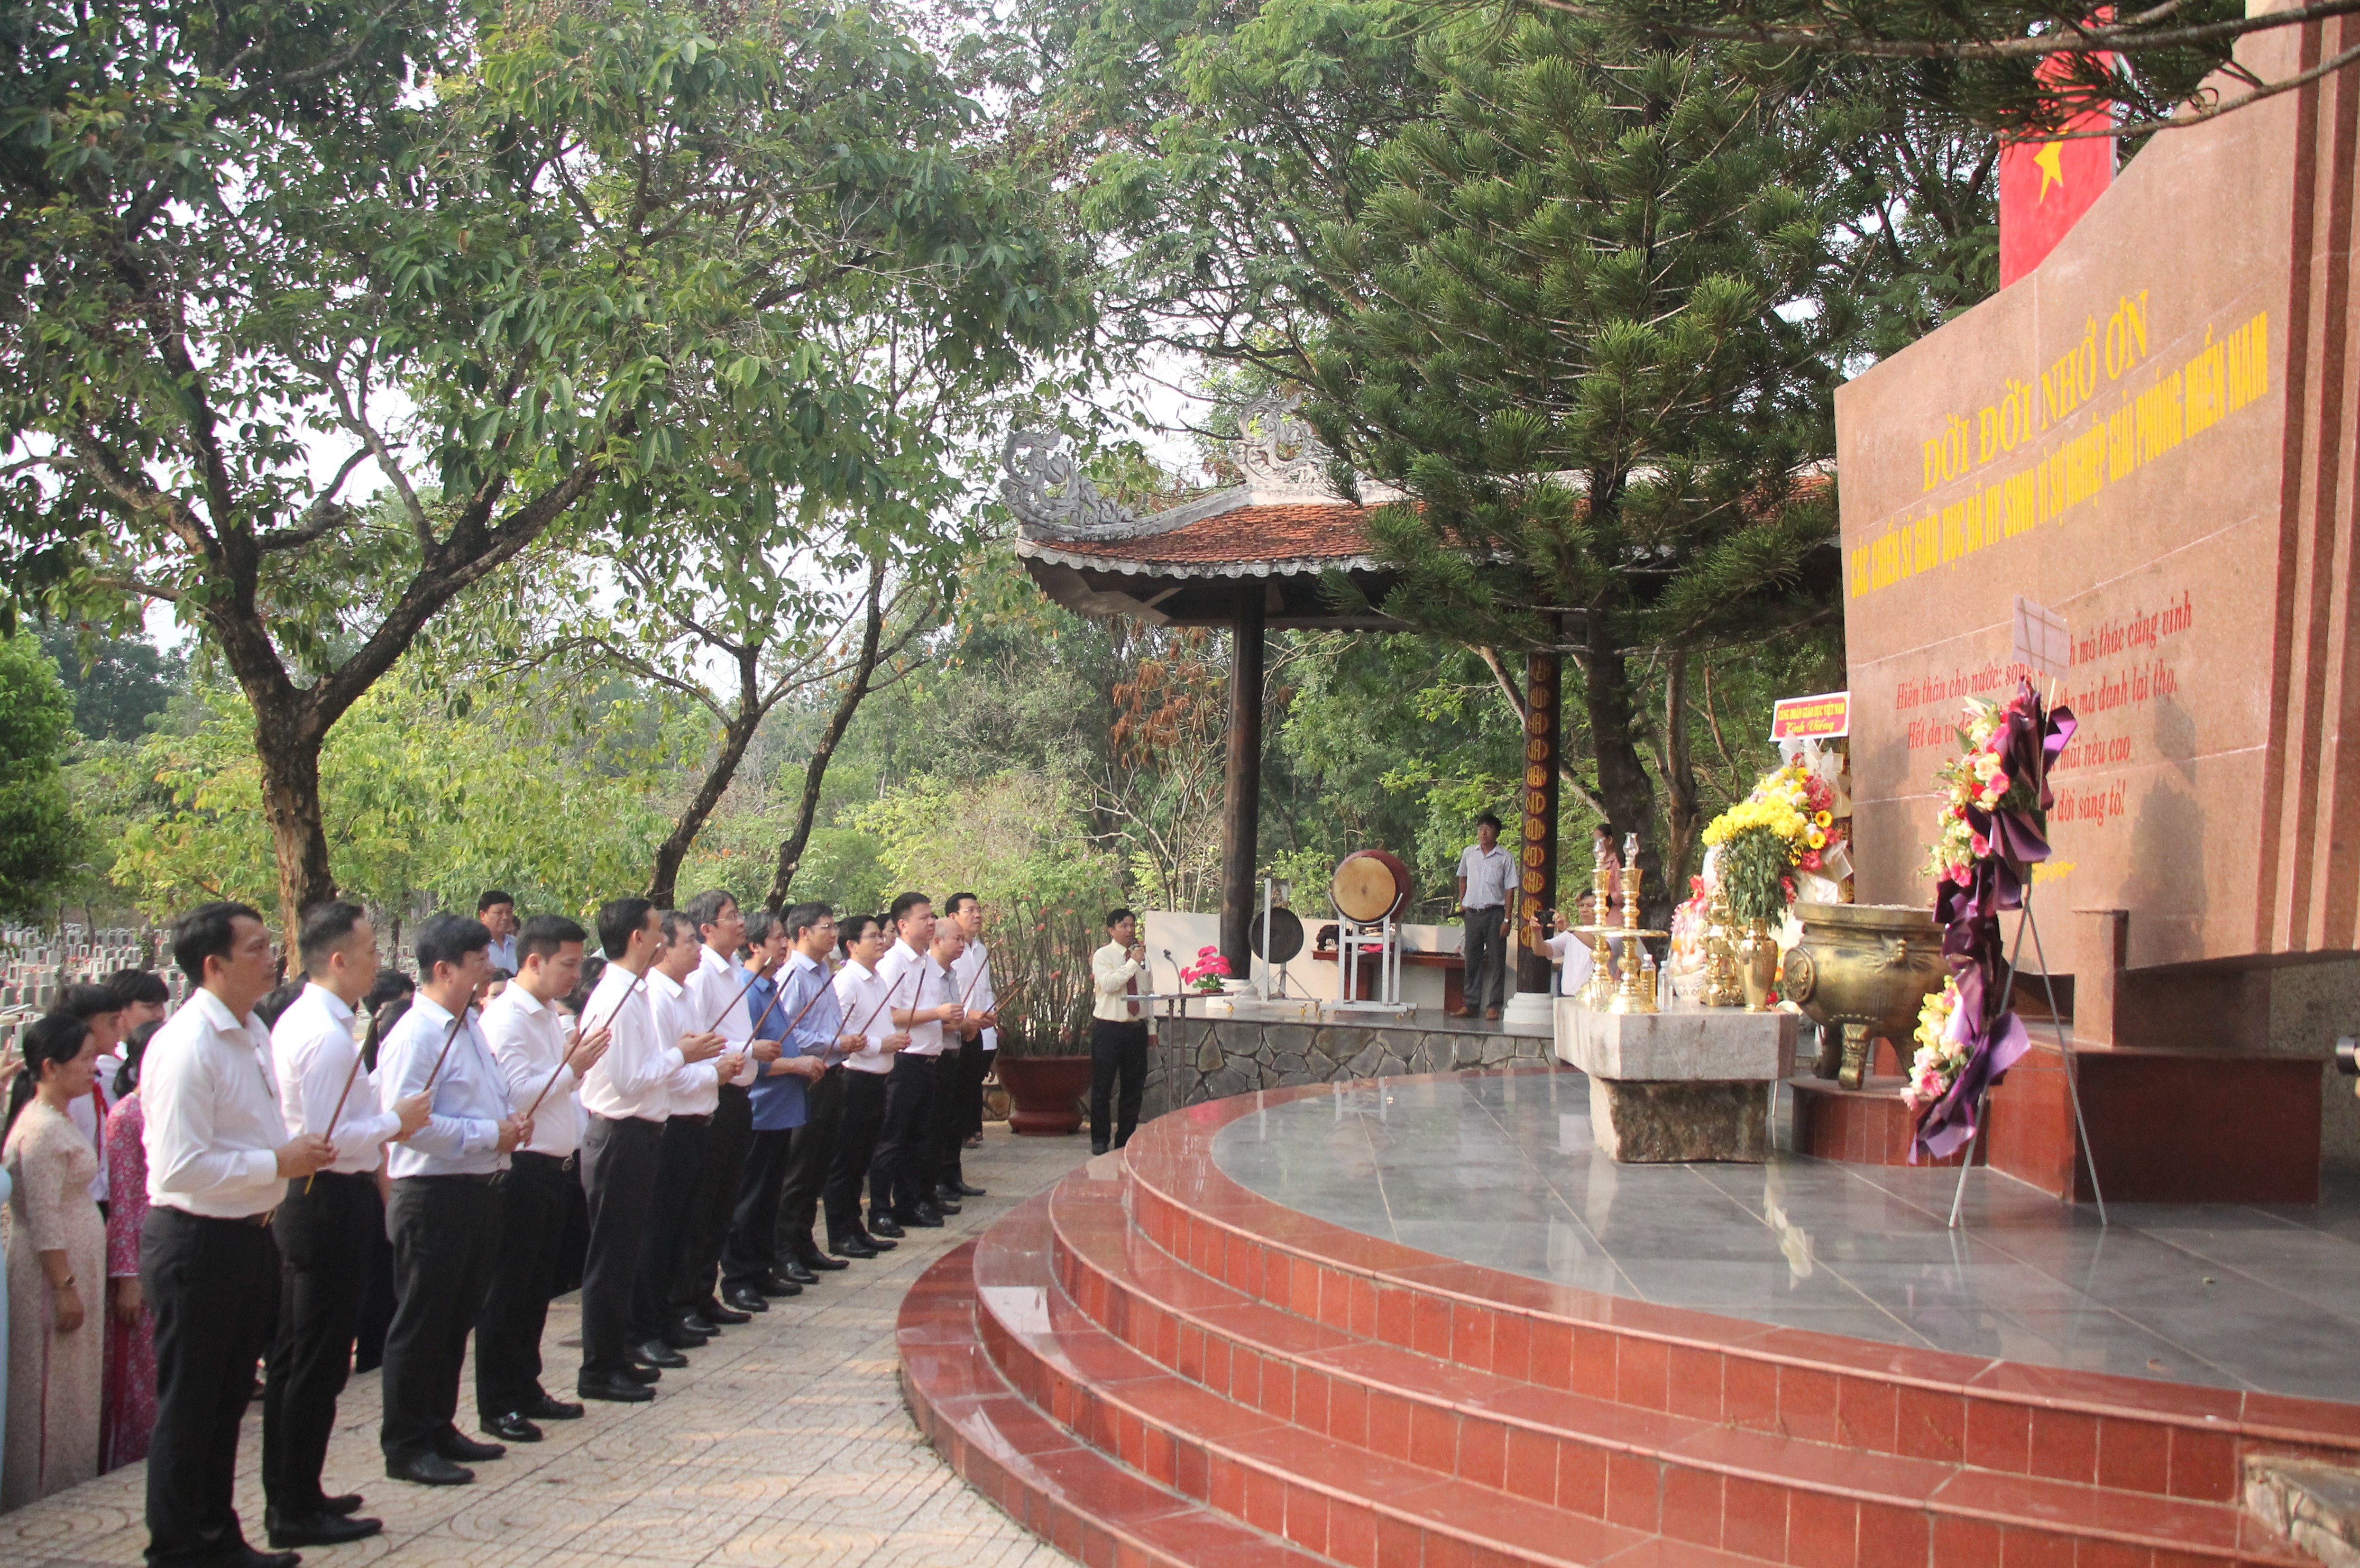 Bộ trưởng Nguyễn Kim Sơn cùng đoàn công tác, lãnh đạo tỉnh Tây Ninh cùng các thầy cô giáo, học sinh tỉnh Tây Ninh tưởng nhớ các chiến sĩ giáo dục đã hi sinh vì sự nghiệp giải phóng miền Nam.